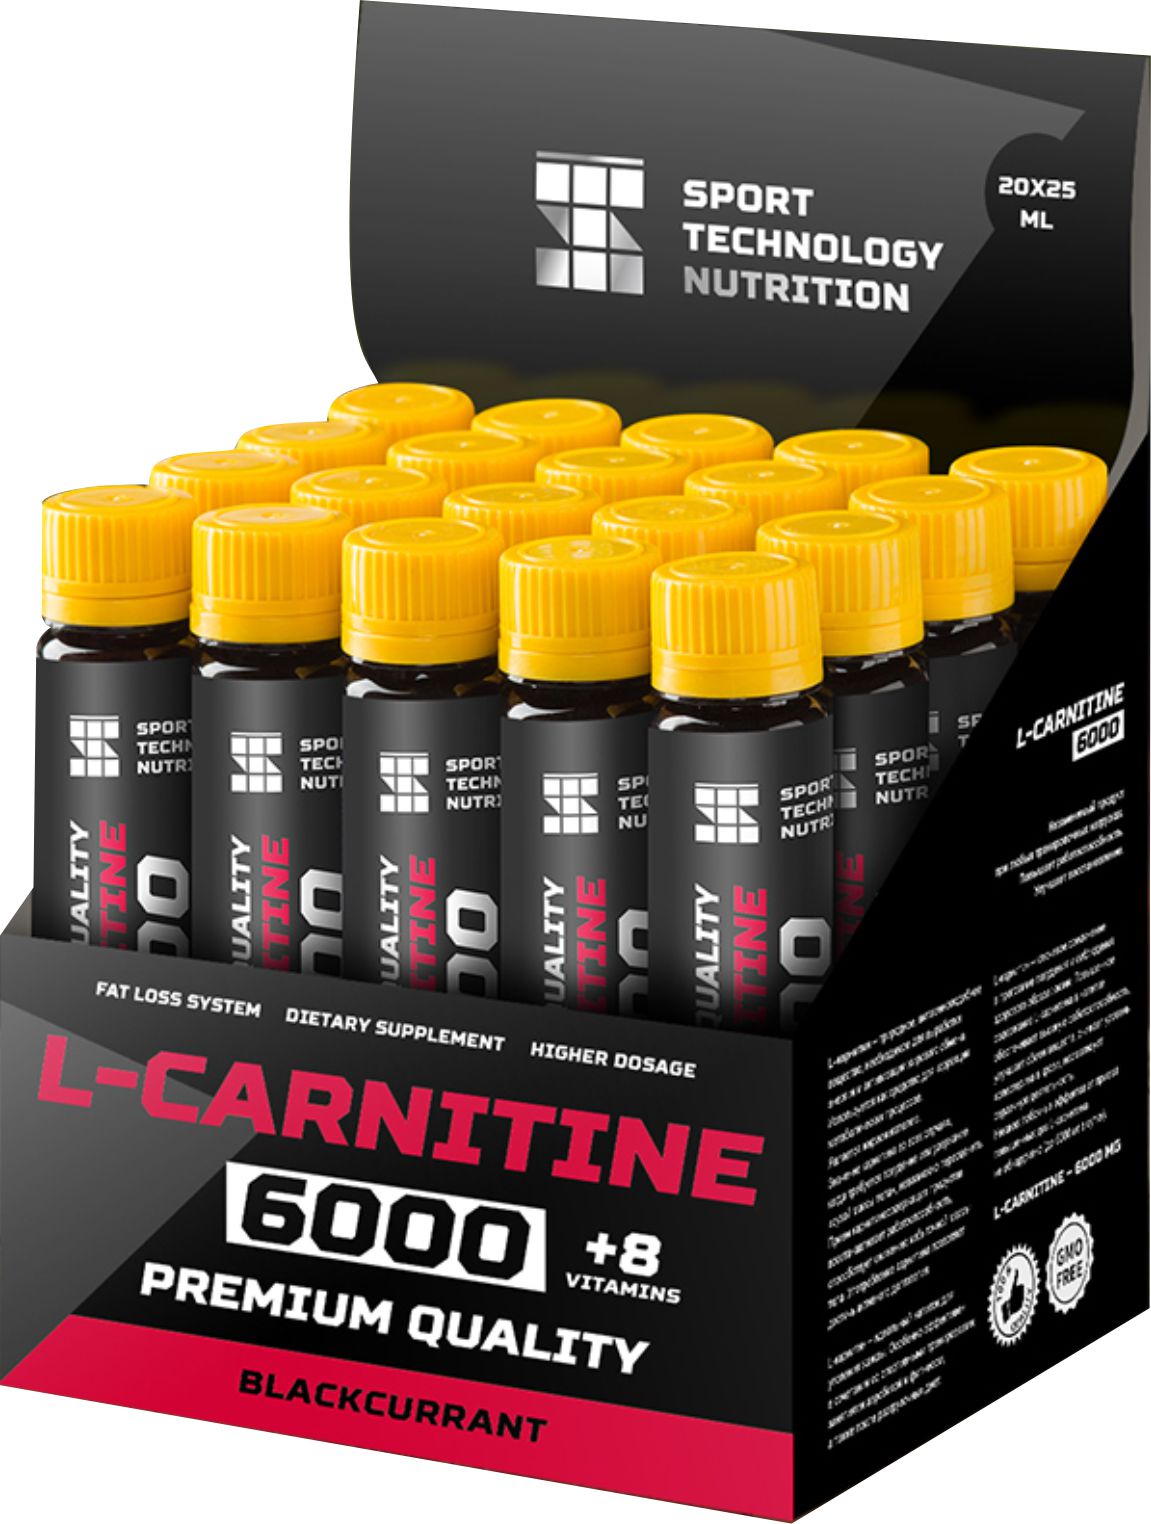 Л картин. L Carnitine 6000. Sporttech l Carnitine. Sport Technology Nutrition l-Carnitine. L-Carnitine 1800 Mega 20 ампул.